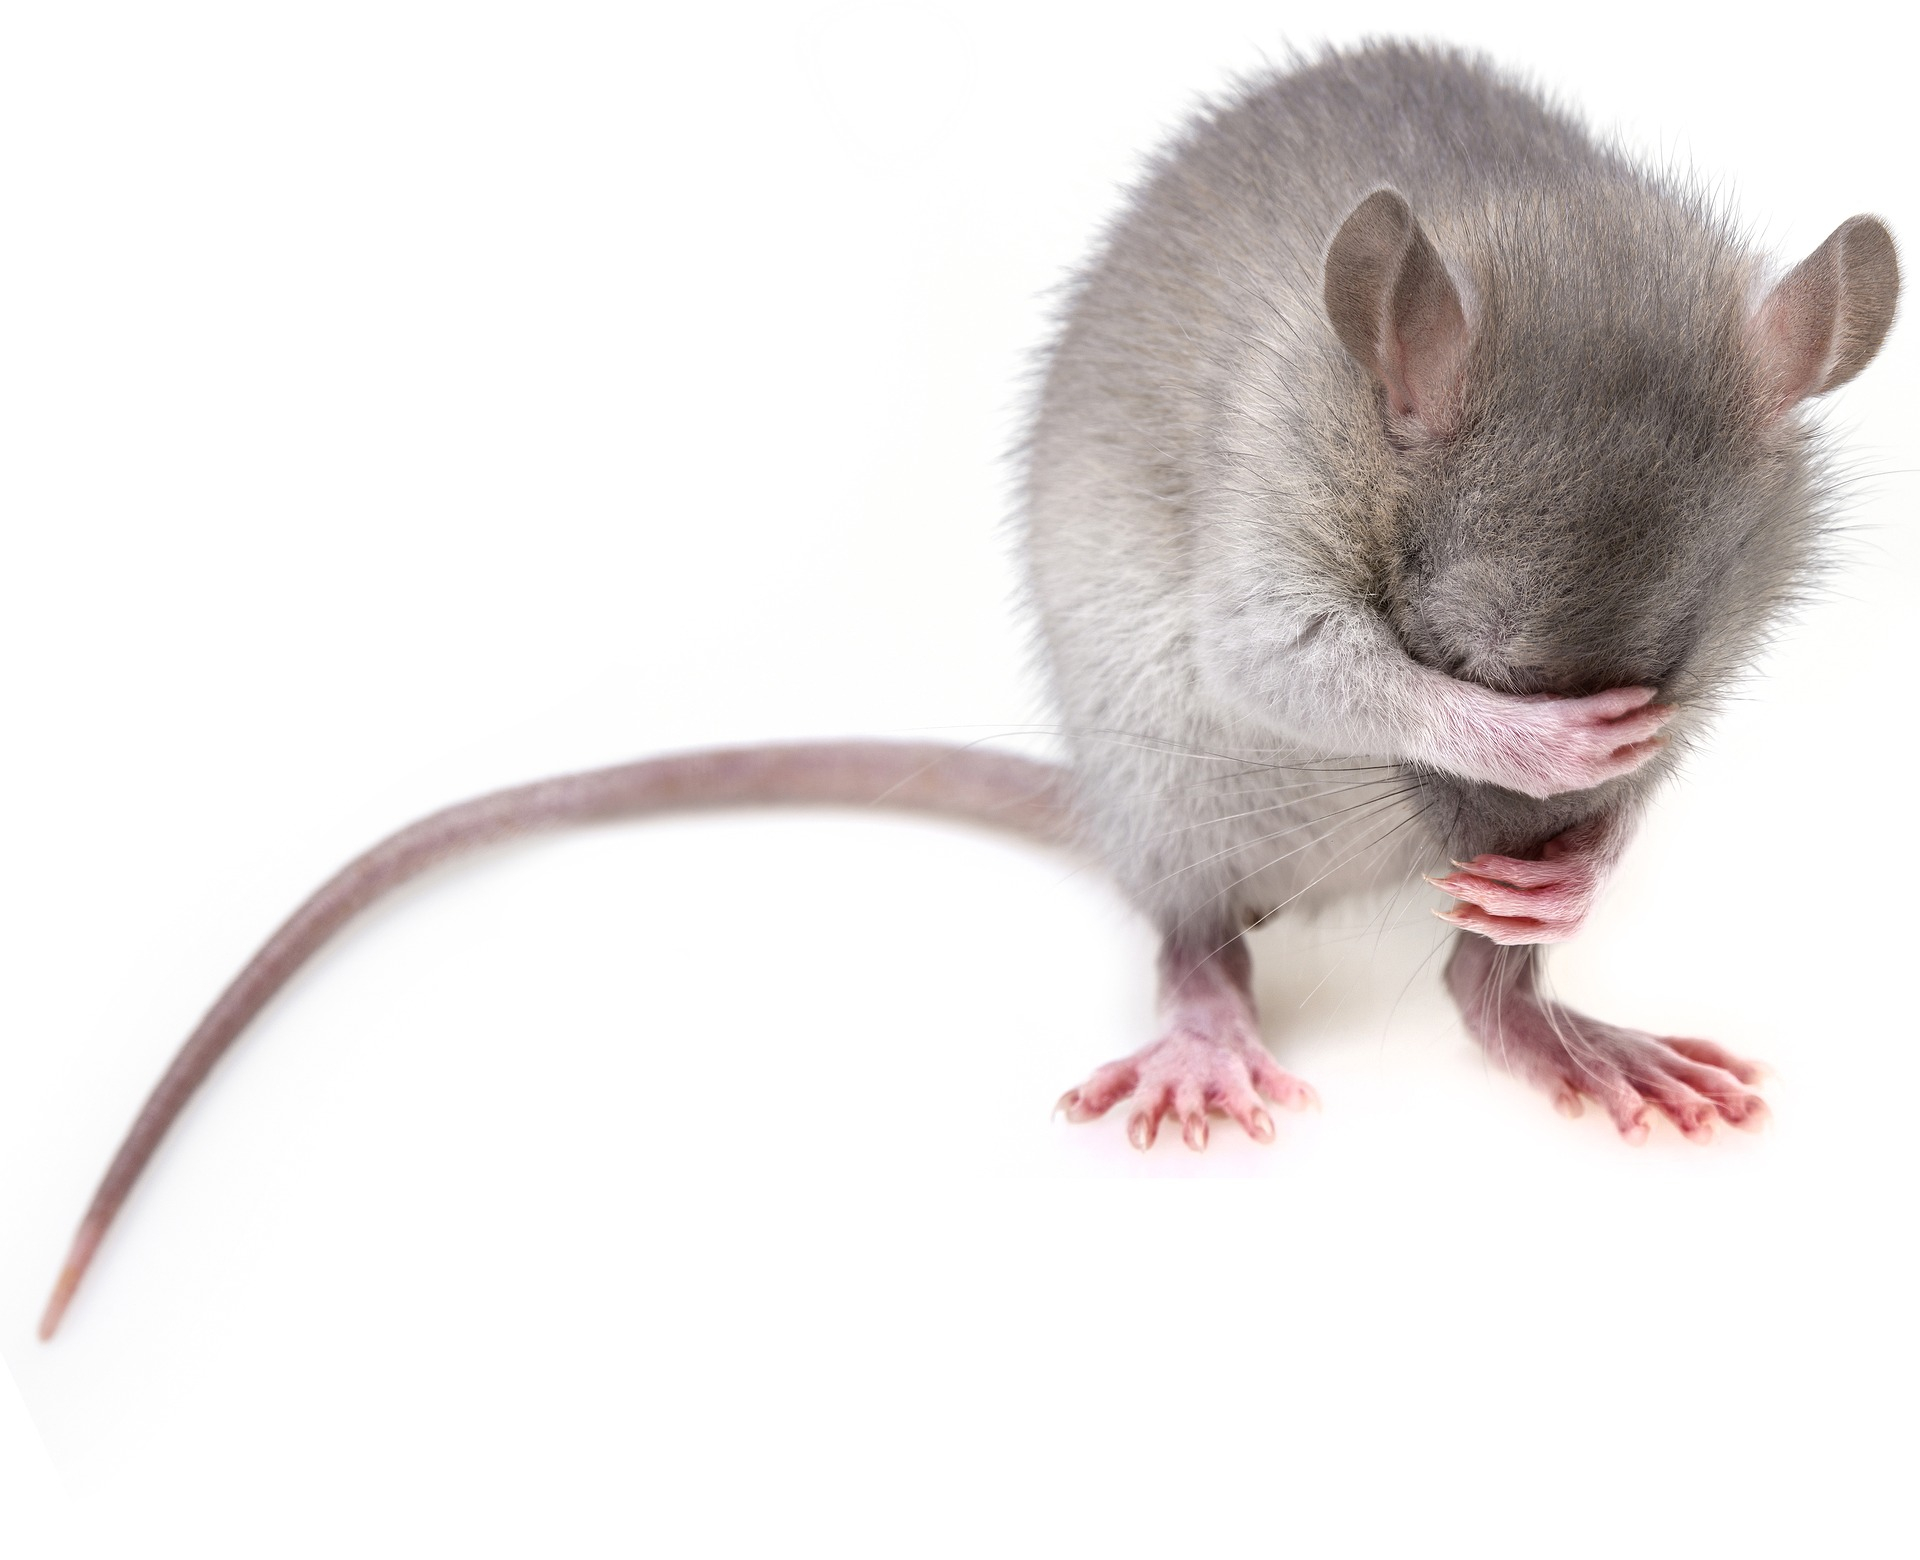 https://pixabay.com/ro/photos/mouse-roz%C4%83tor-rat-mouse-uri-3194768/